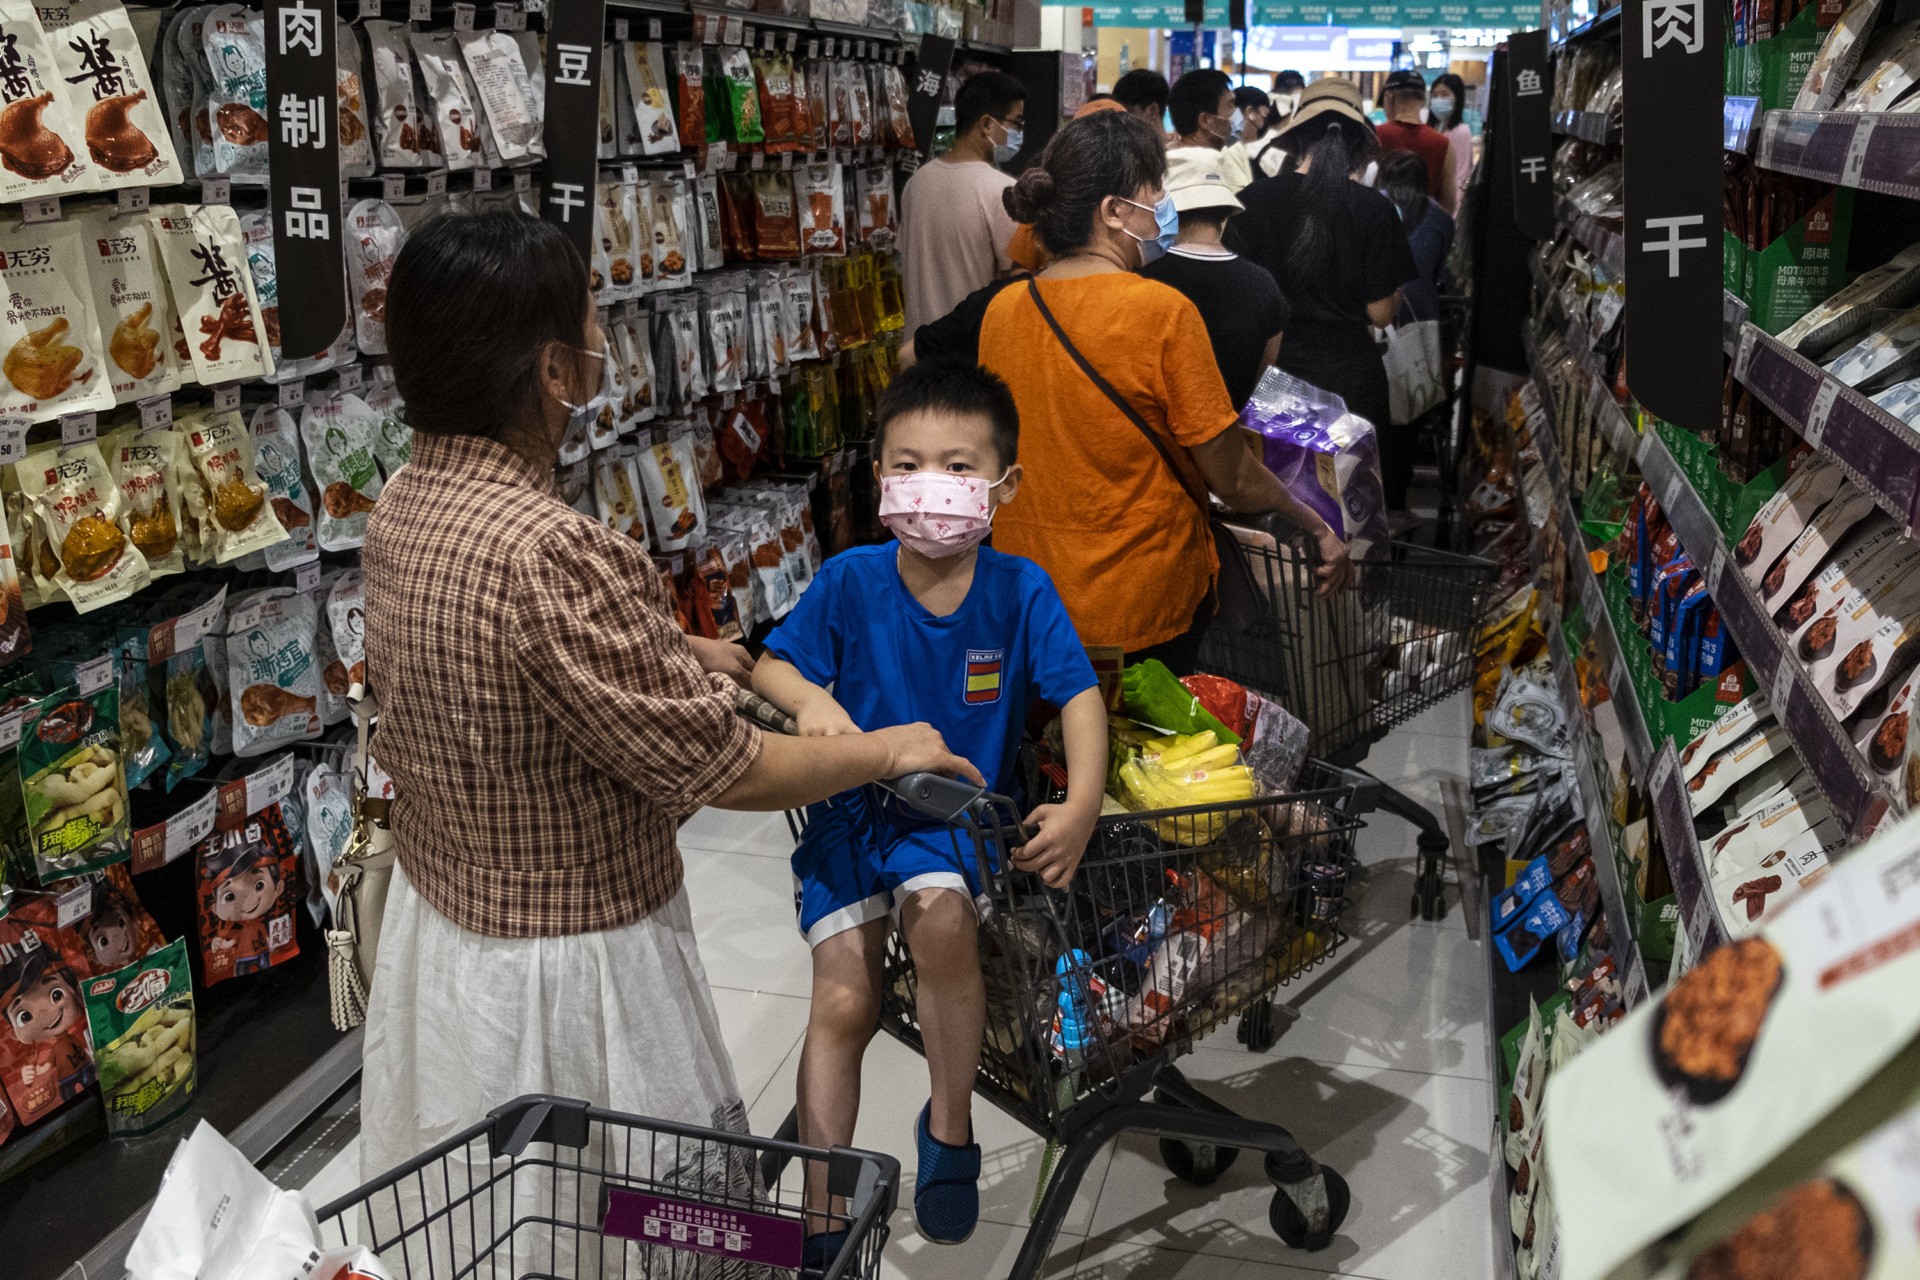 ΓΟΥΧΑΝ, ΚΙΝΑ - 2 ΑΥΓΟΥΣΤΟΥ (Εκτός Κίνας) Οι άνθρωποι φορούν προστατευτικές μάσκες καθώς παρατάσσονται για να πληρώσουν σε σούπερ μάρκετ στις 2 Αυγούστου 2021 στο Γουχάν, επαρχία Χουμπέι, Κίνα.  Σύμφωνα με δημοσιεύματα των μέσων ενημέρωσης, επτά διακινούμενοι εργαζόμενοι επέστρεψαν θετικά αποτελέσματα τεστ DNA COVID-19.  Η Γουχάν δεν έχει αναφέρει τοπικά μεταδιδόμενα κρούσματα για περισσότερο από ένα χρόνο.  (Φωτογραφία από Getty Images)